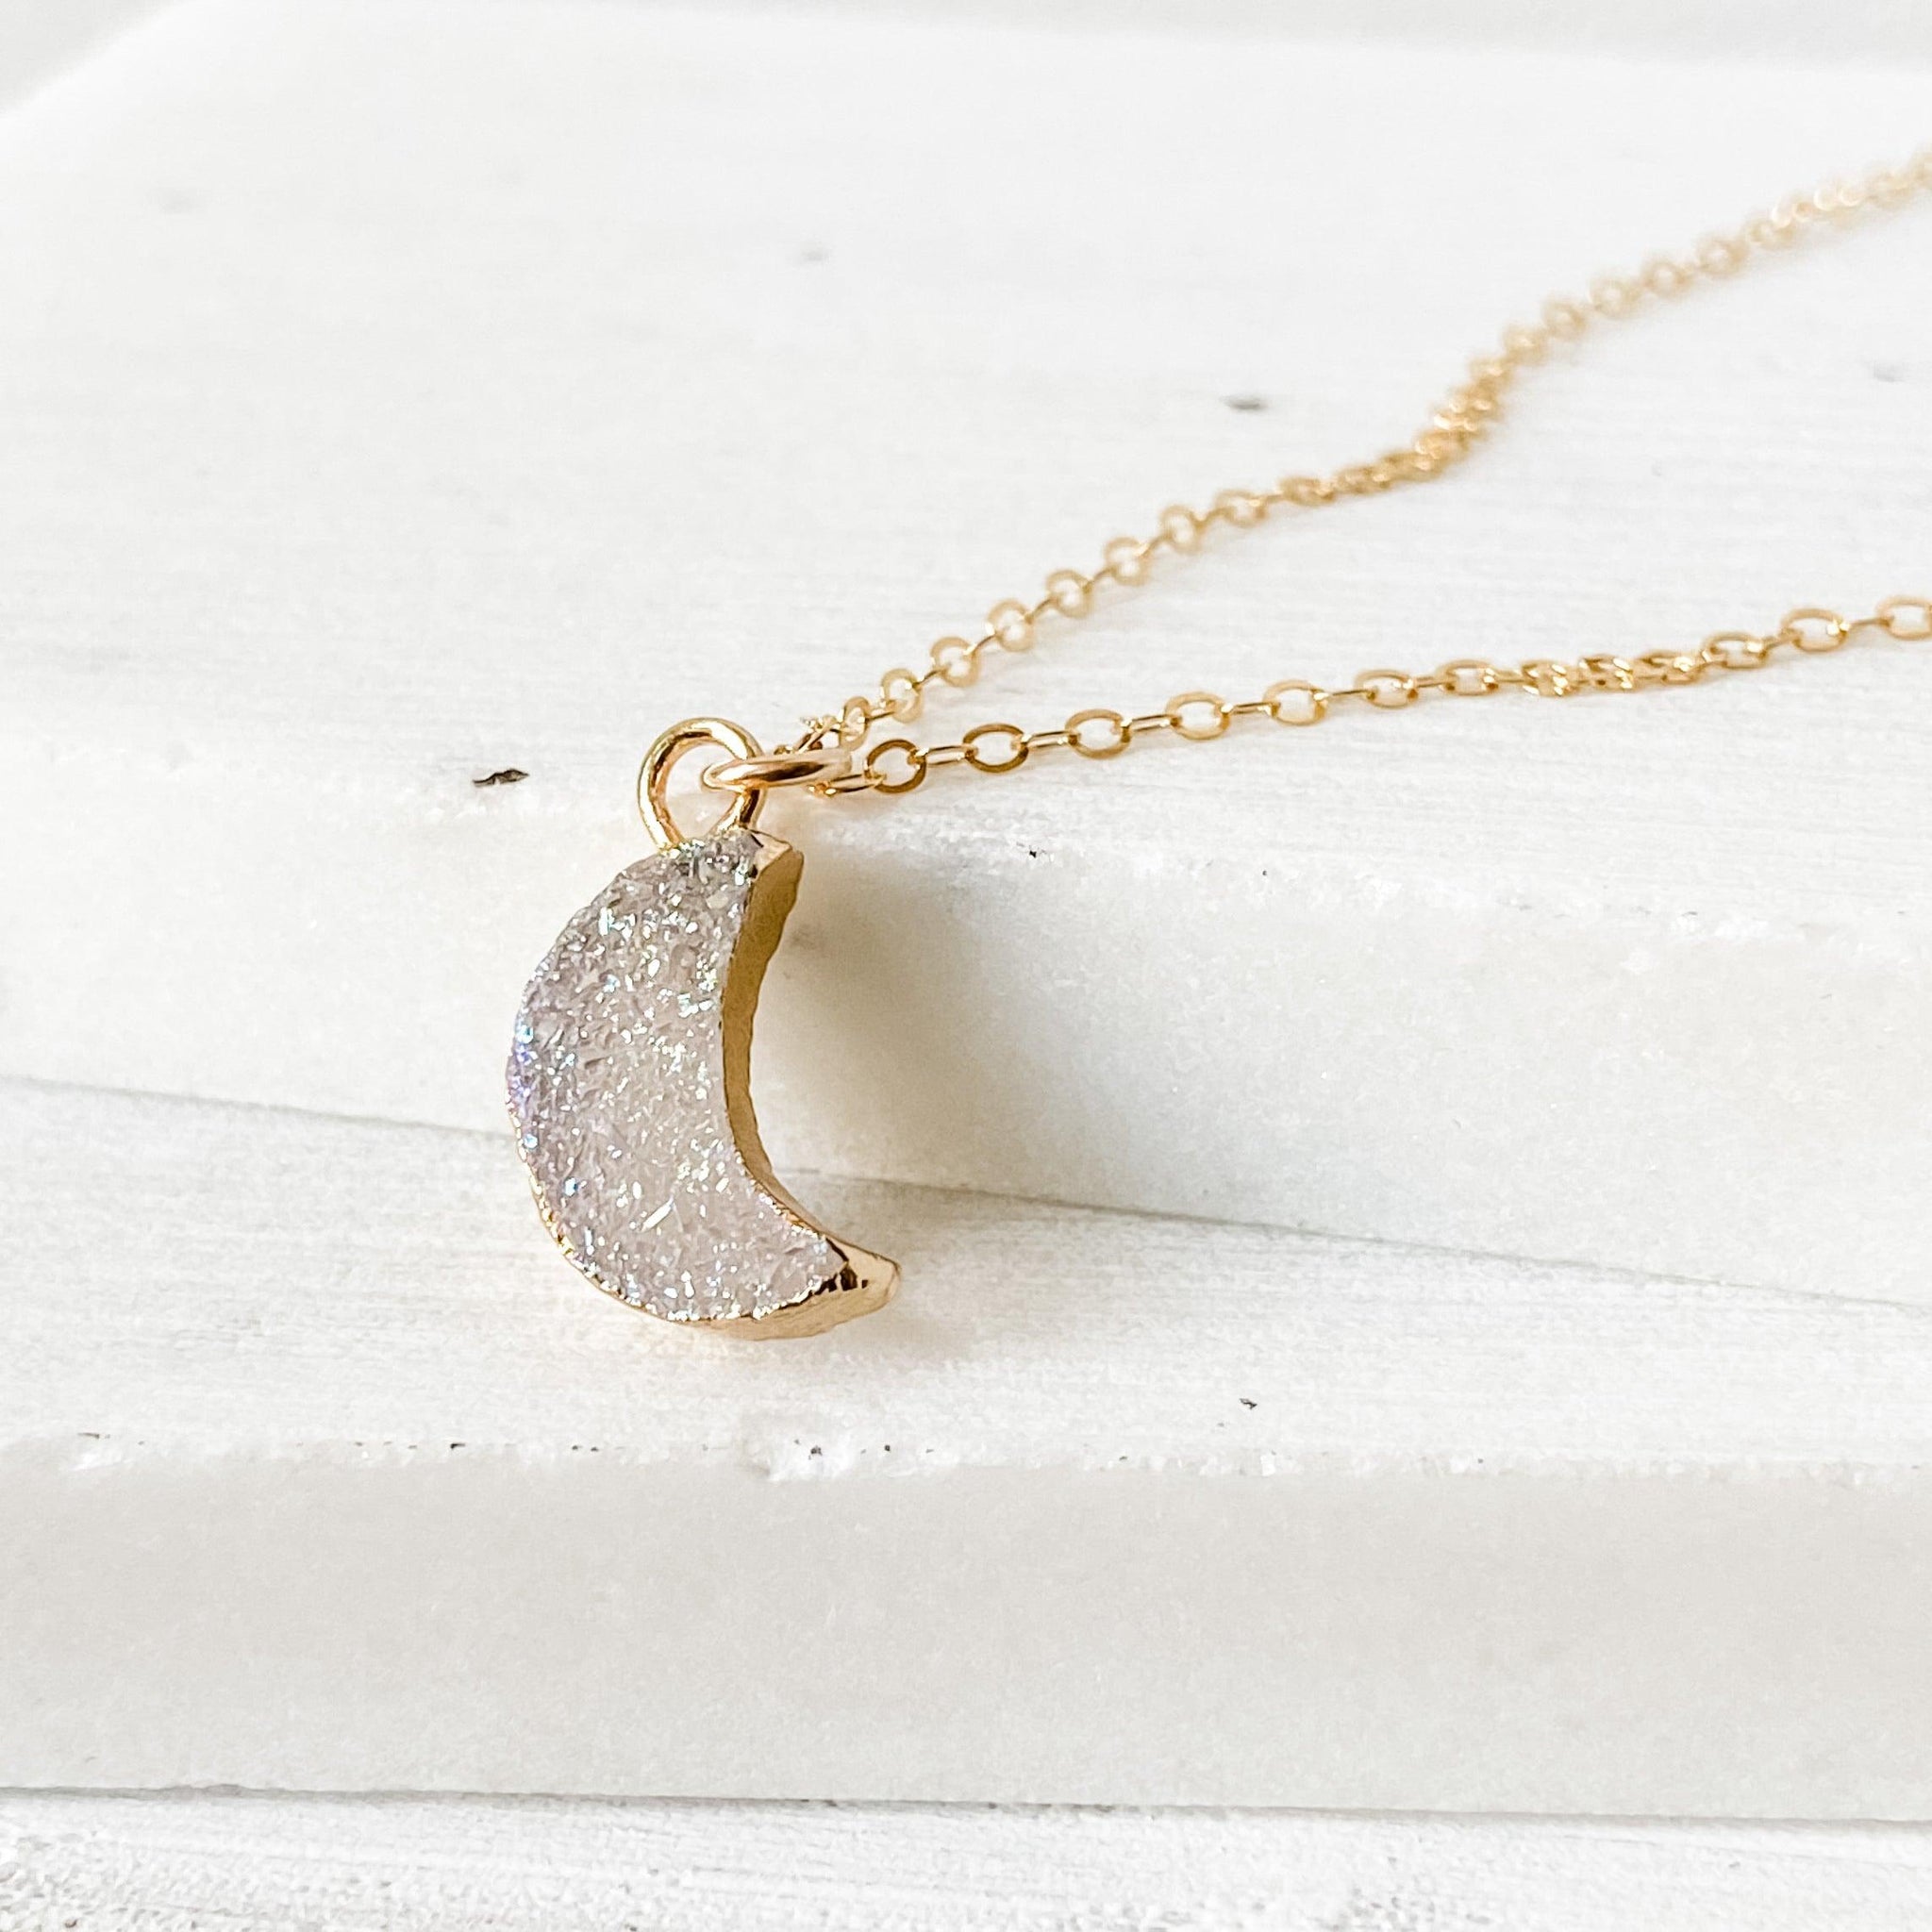 Druzy Quartz Mini Moon Pendant Necklace on 14K Gold Filled Chain Uni-T Necklace